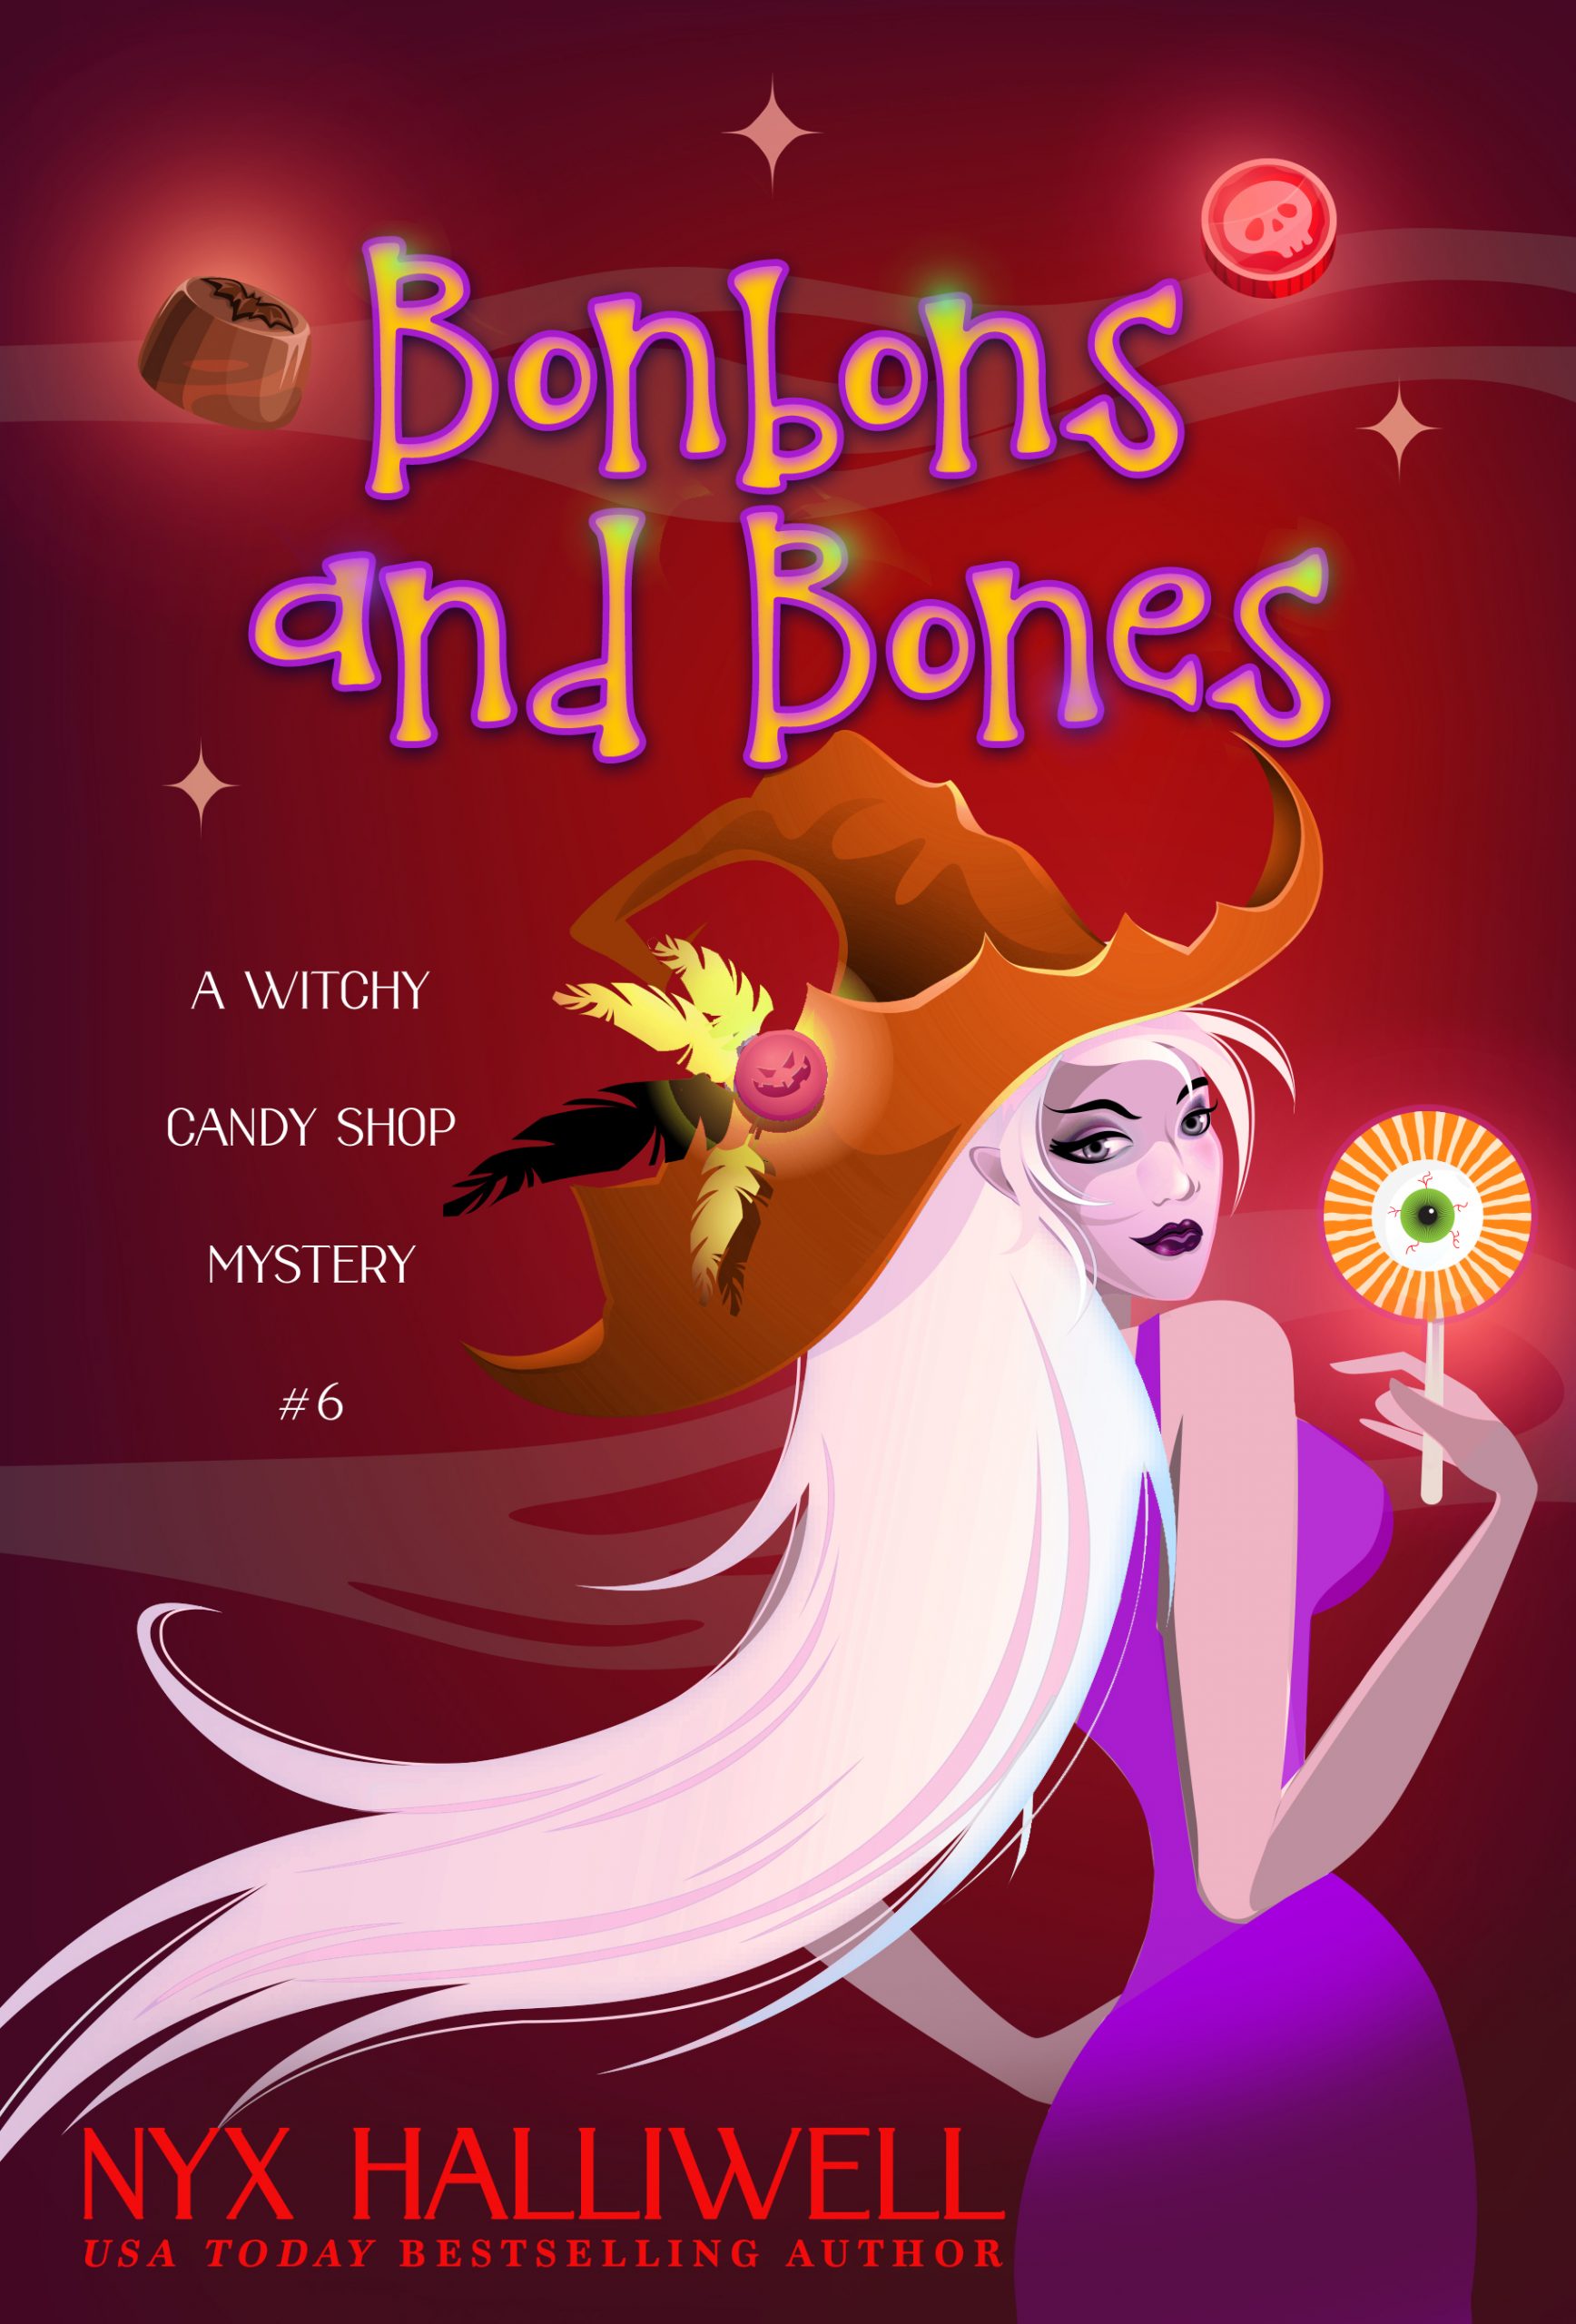 Bonbons and Bones book cover